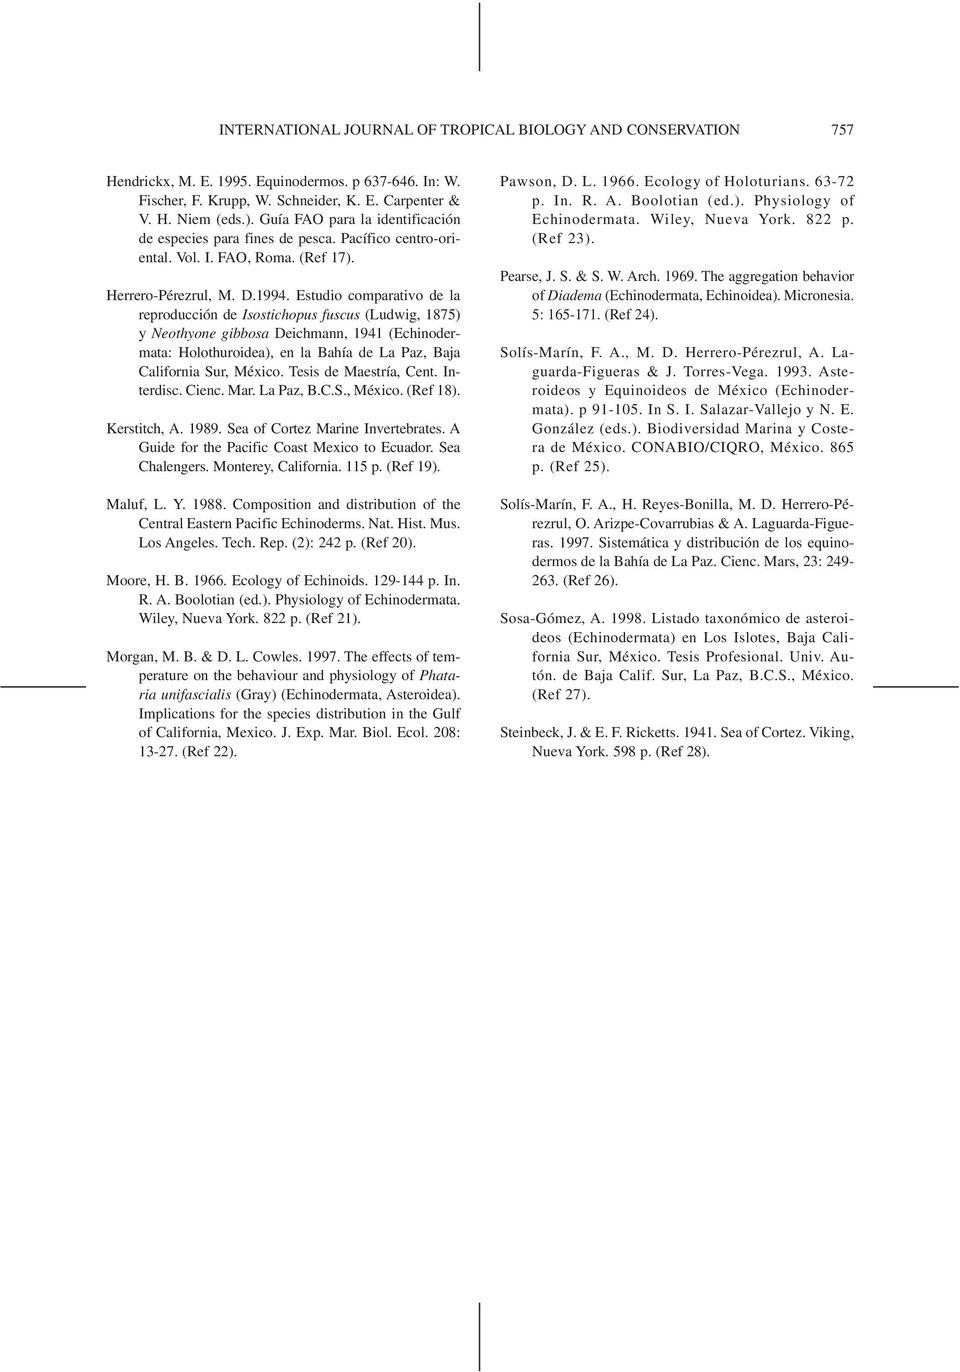 Estudio comparativo de la reproducción de Isostichopus fuscus (Ludwig, 1875) y Neothyone gibbosa Deichmann, 1941 (Echinodermata: Holothuroidea), en la Bahía de La Paz, Baja California Sur, México.